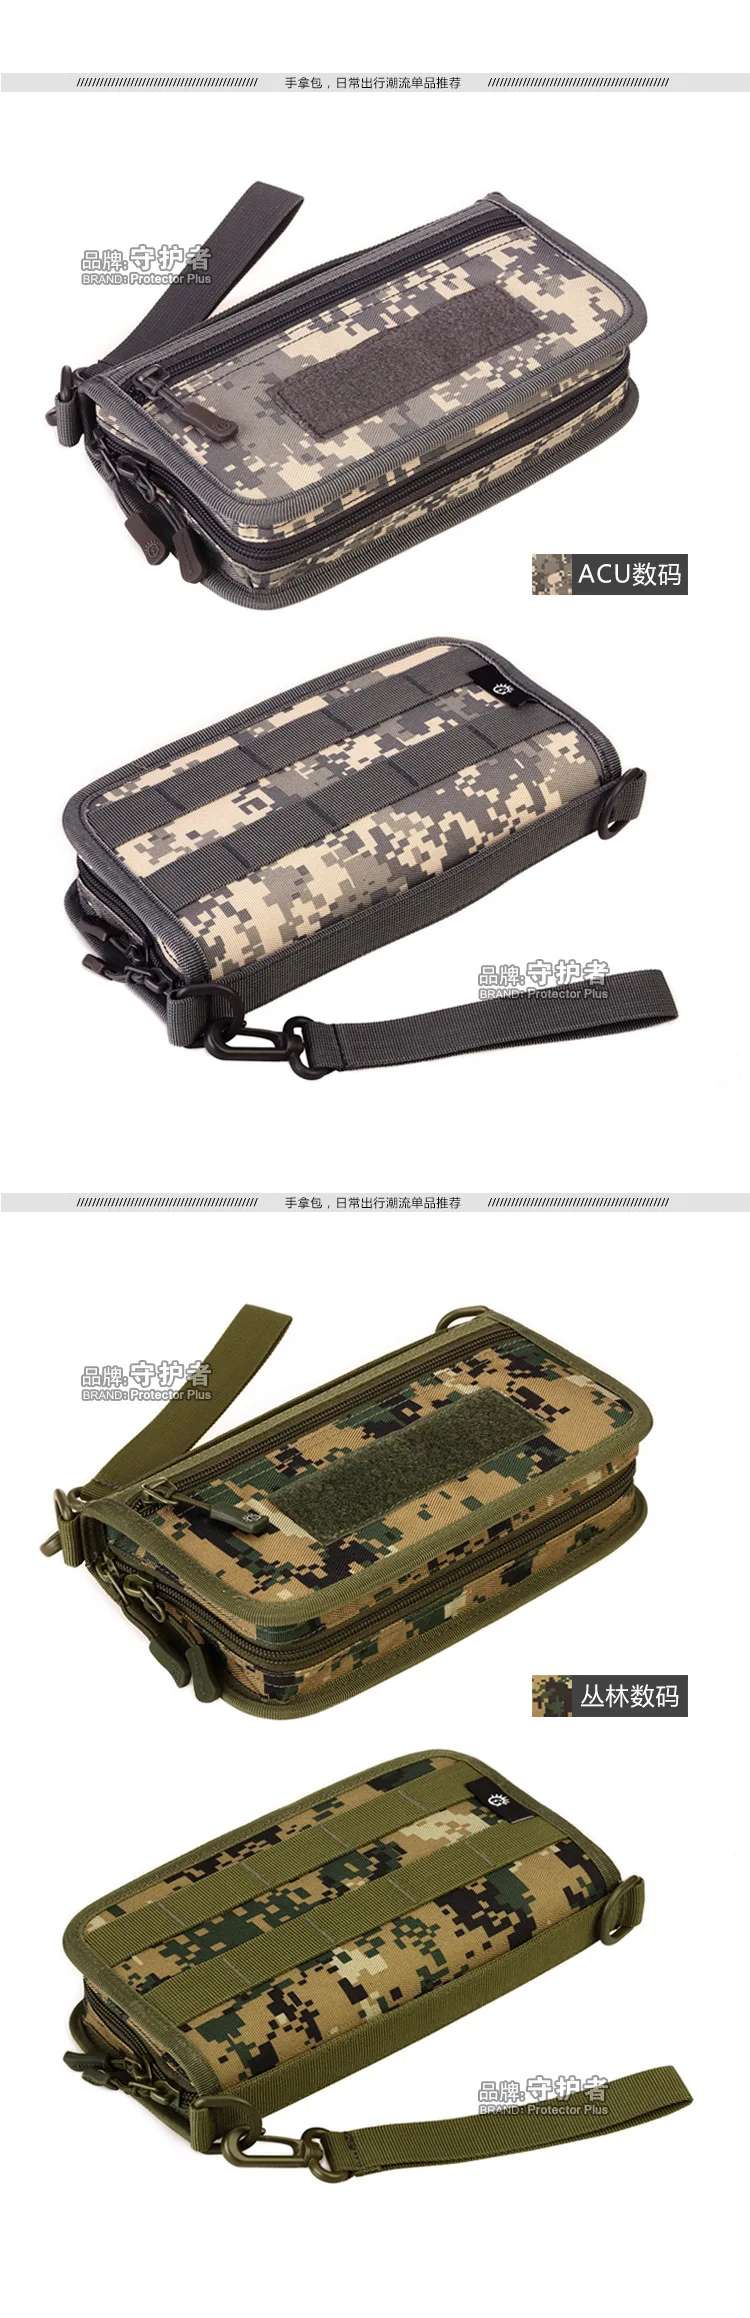 Тактический кошелек-клатч MOLLE, пакет для паспорта, камуфляжная спортивная сумка A4439